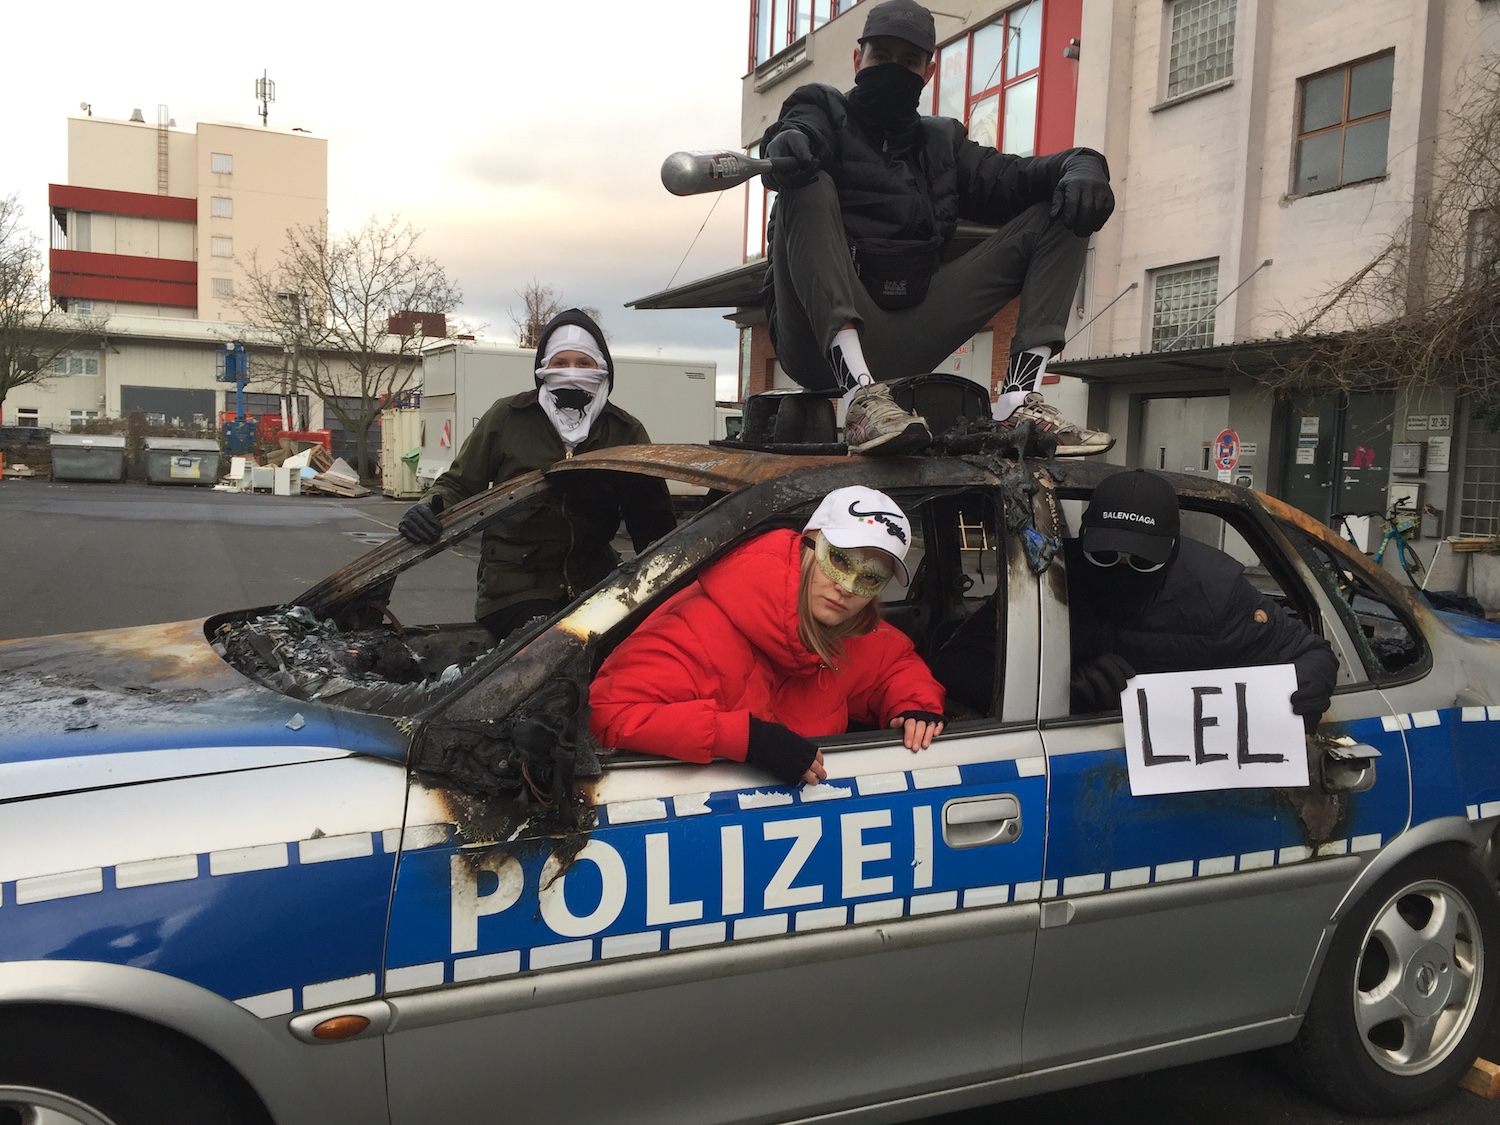 Die Frankfurter Hauptschule posiert mit einem ausgebrannten Polizeiauto. Ein Mitglied der Gruppe hält einen Zettel mit der Aufschrift "lel".